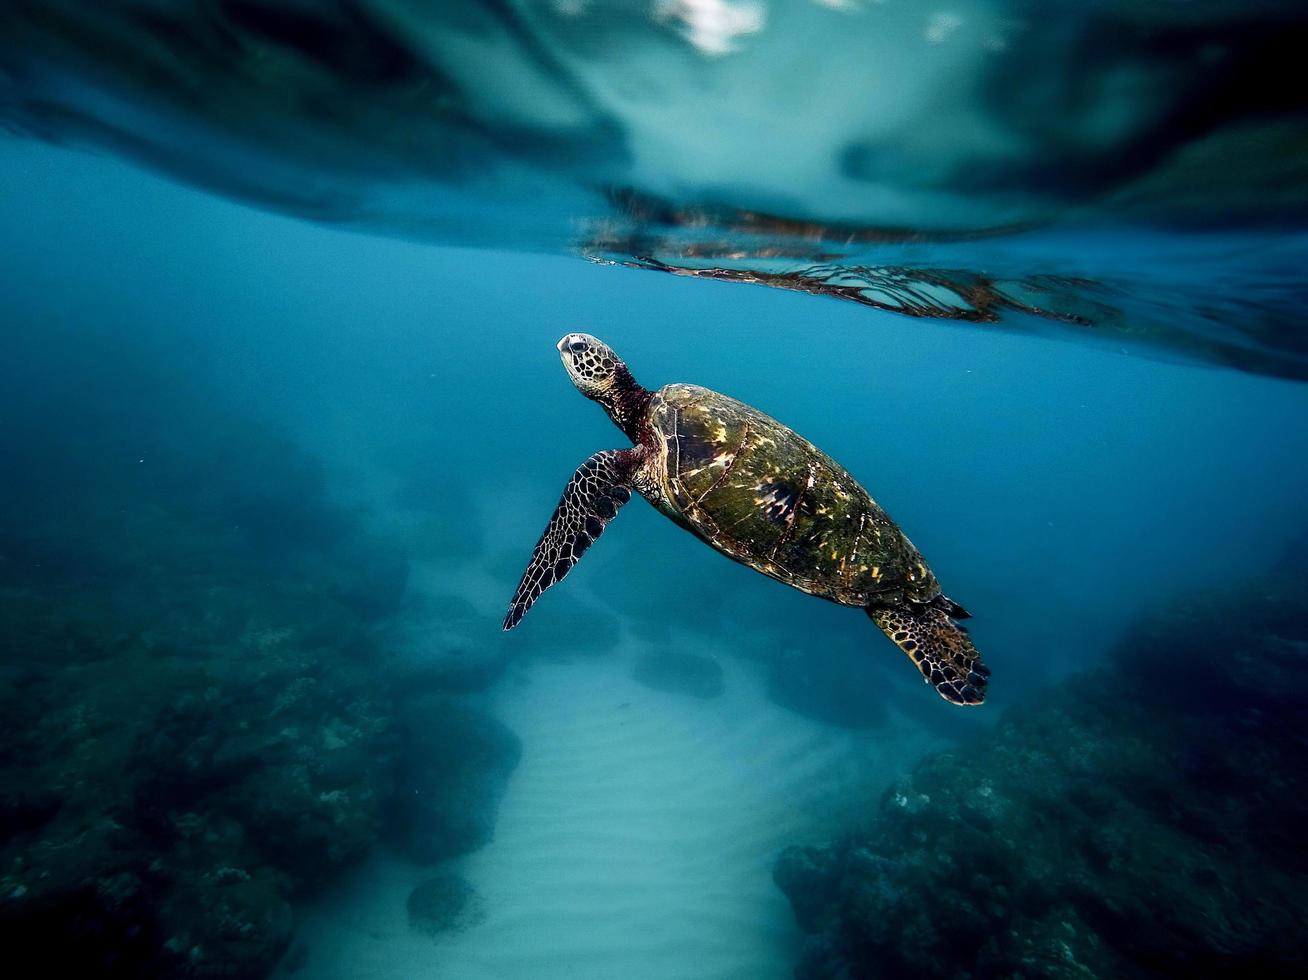 tartaruga marinha nadando no mar foto